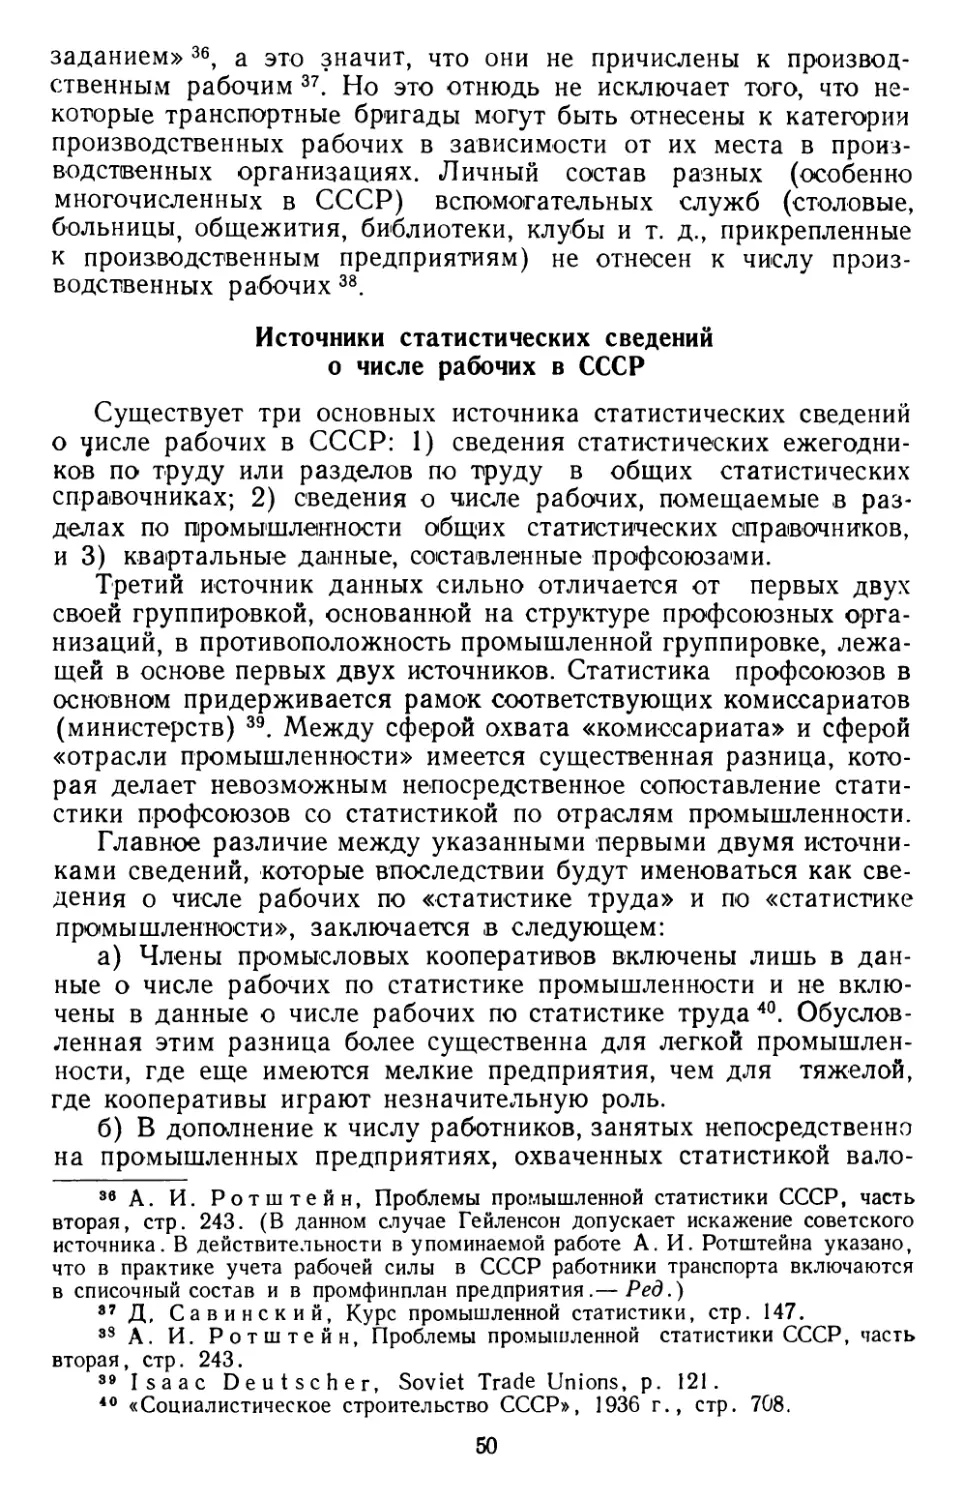 Источники статистических сведений о числе рабочих в СССР